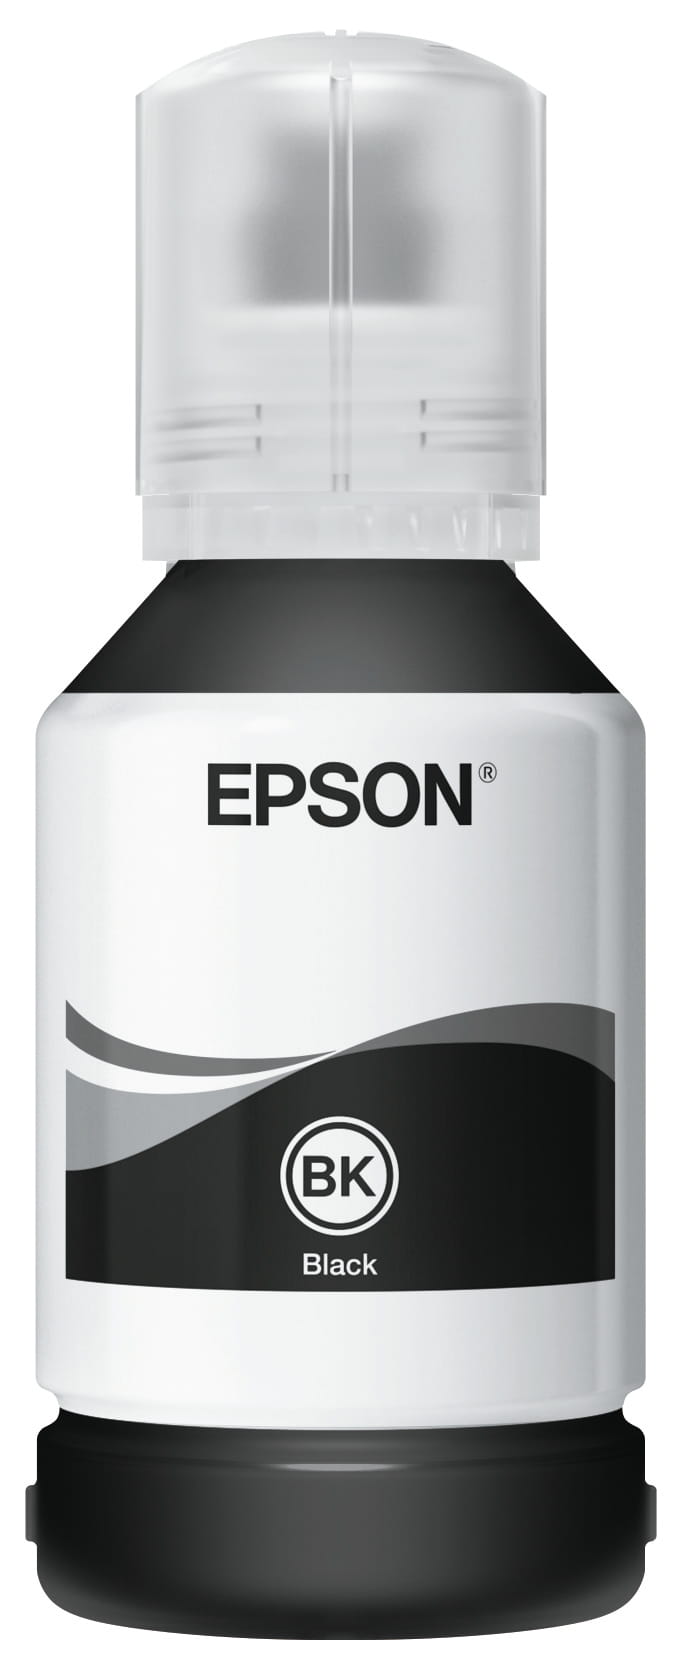 Epson 111 - 120 ml - XL - Schwarz - original